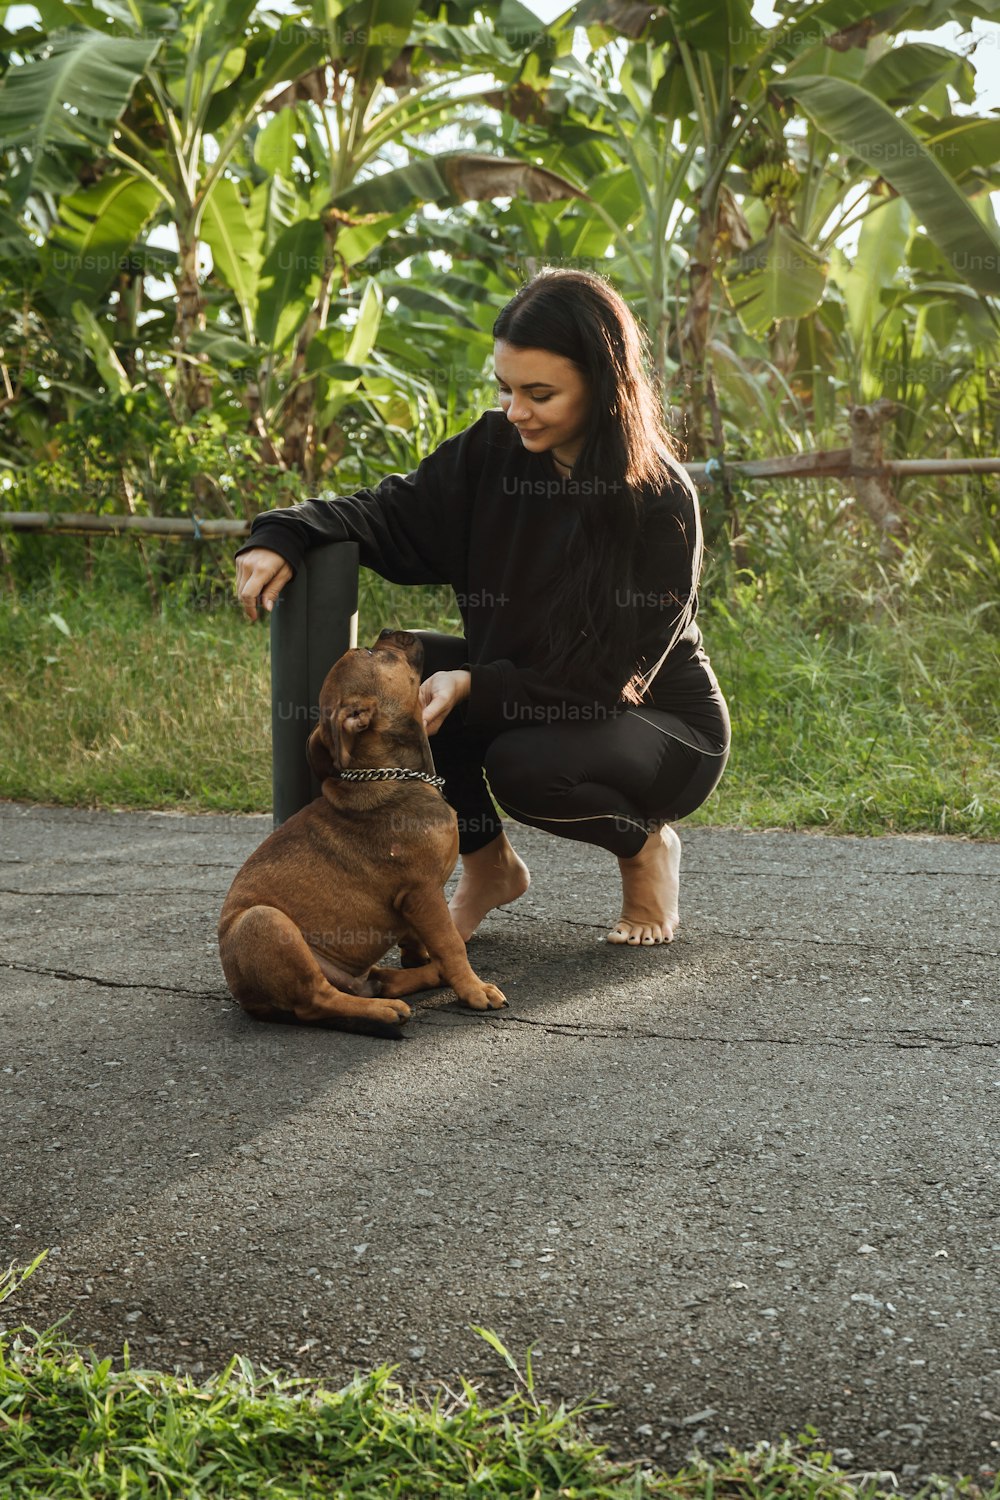 Una donna inginocchiata accanto a un cane marrone